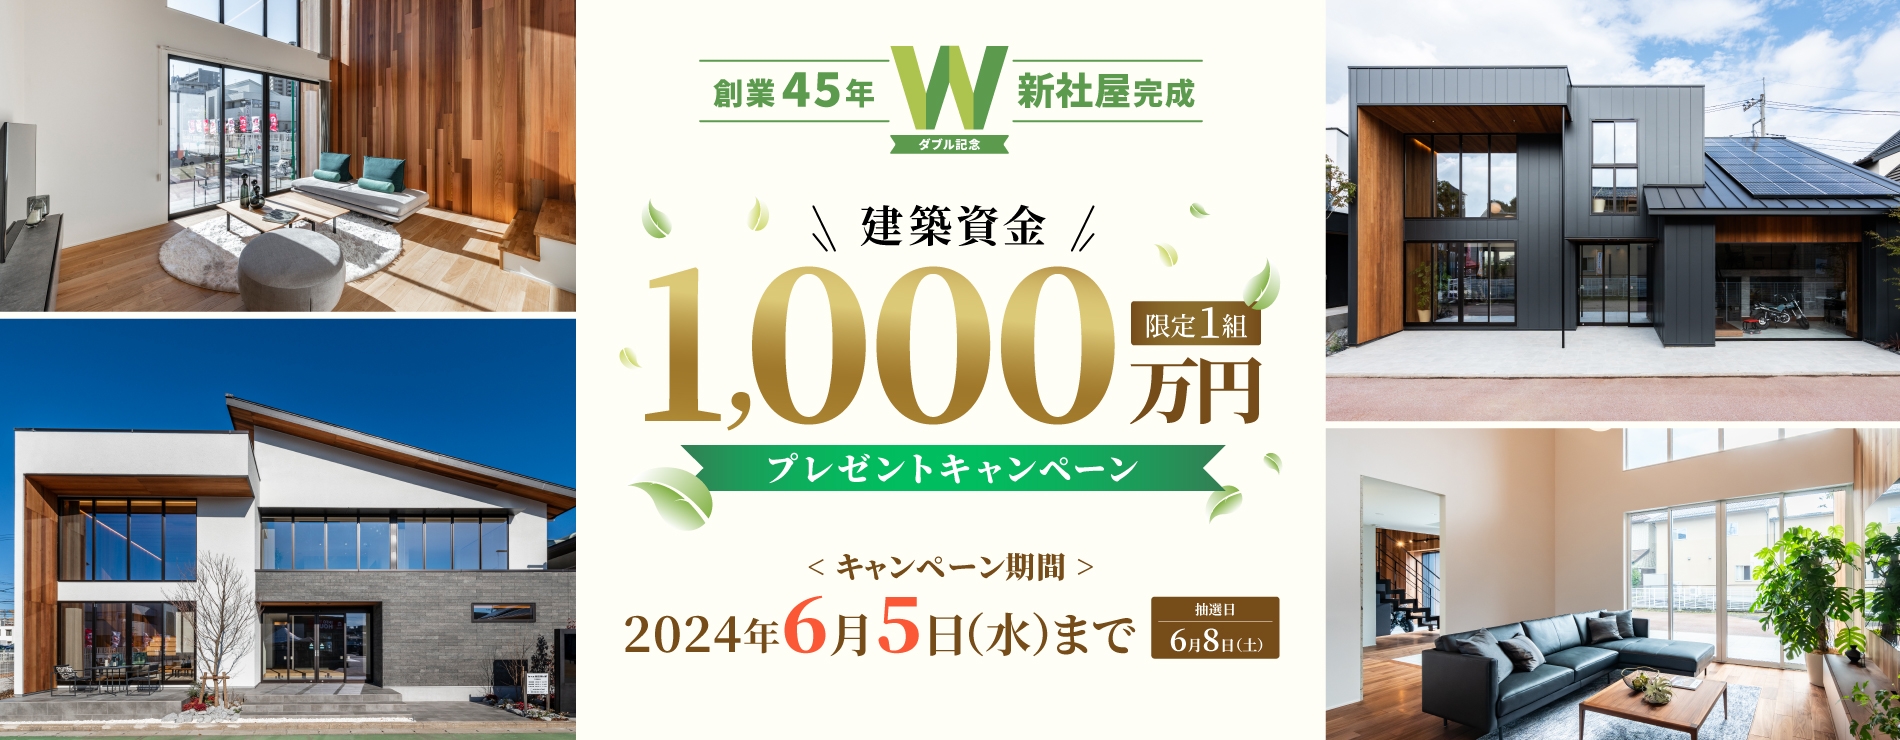 限定1組建築資金1,000万円プレゼントキャンペーン